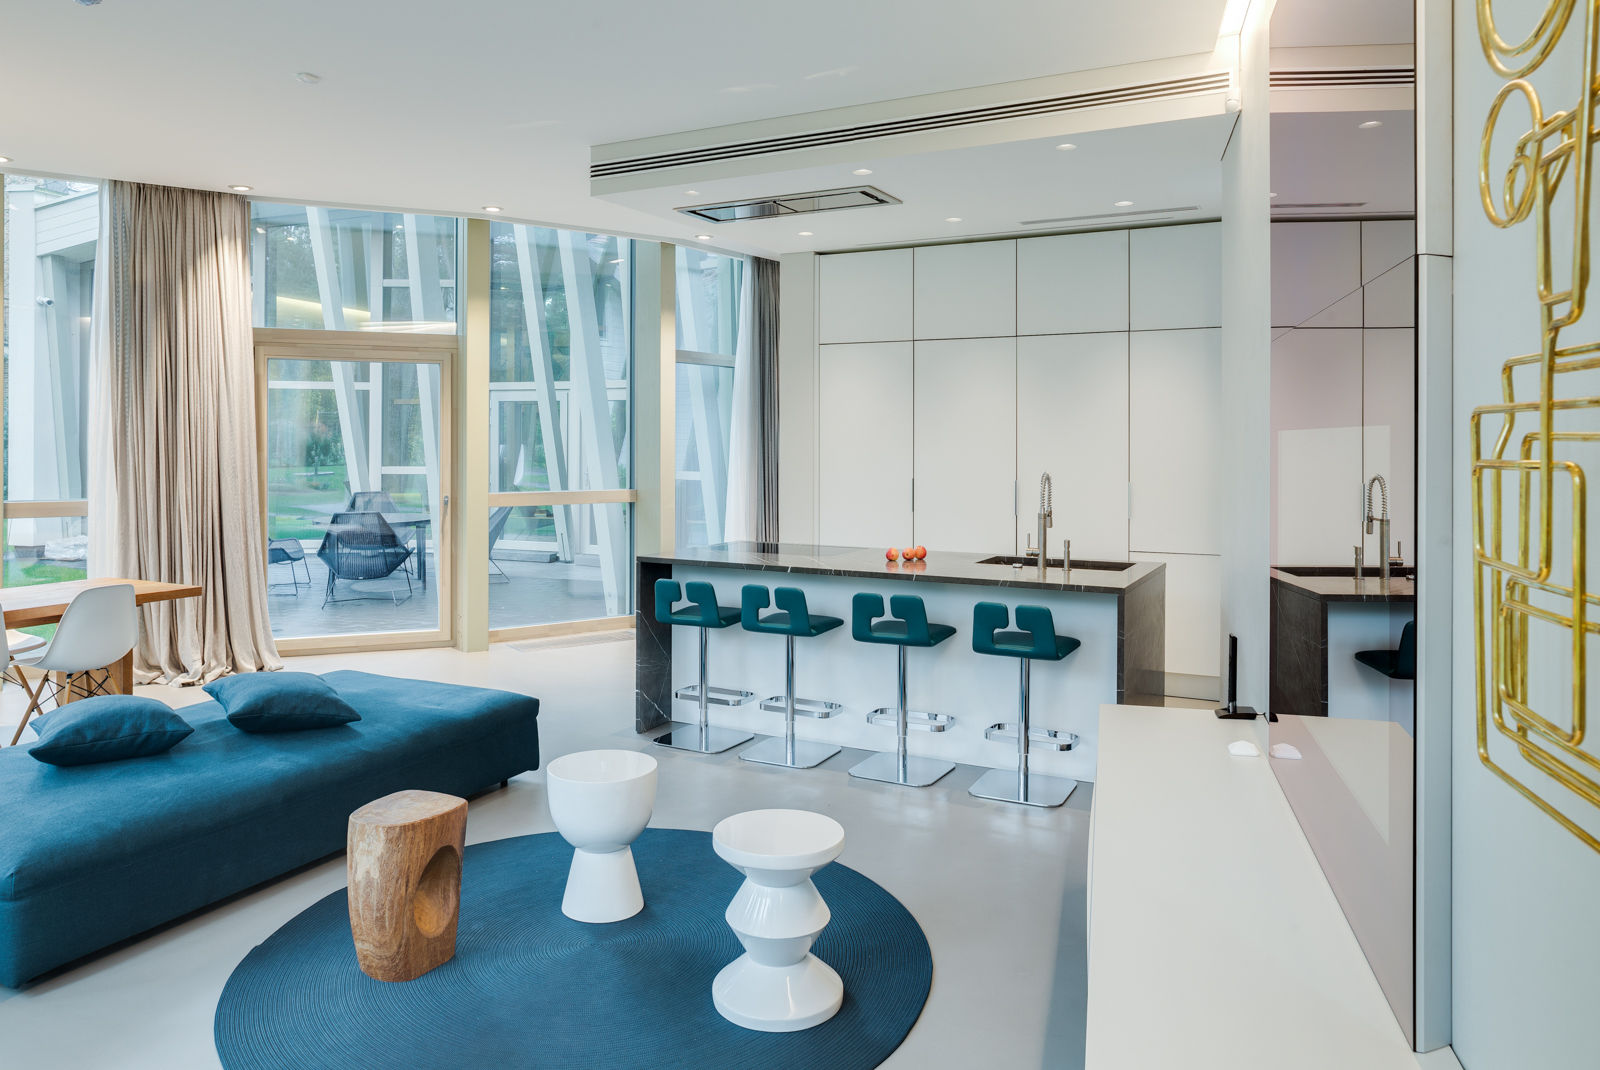 Guest House Contemporanea in Lituania, Galbiati Milano Design Hub Galbiati Milano Design Hub Ruang Makan Modern